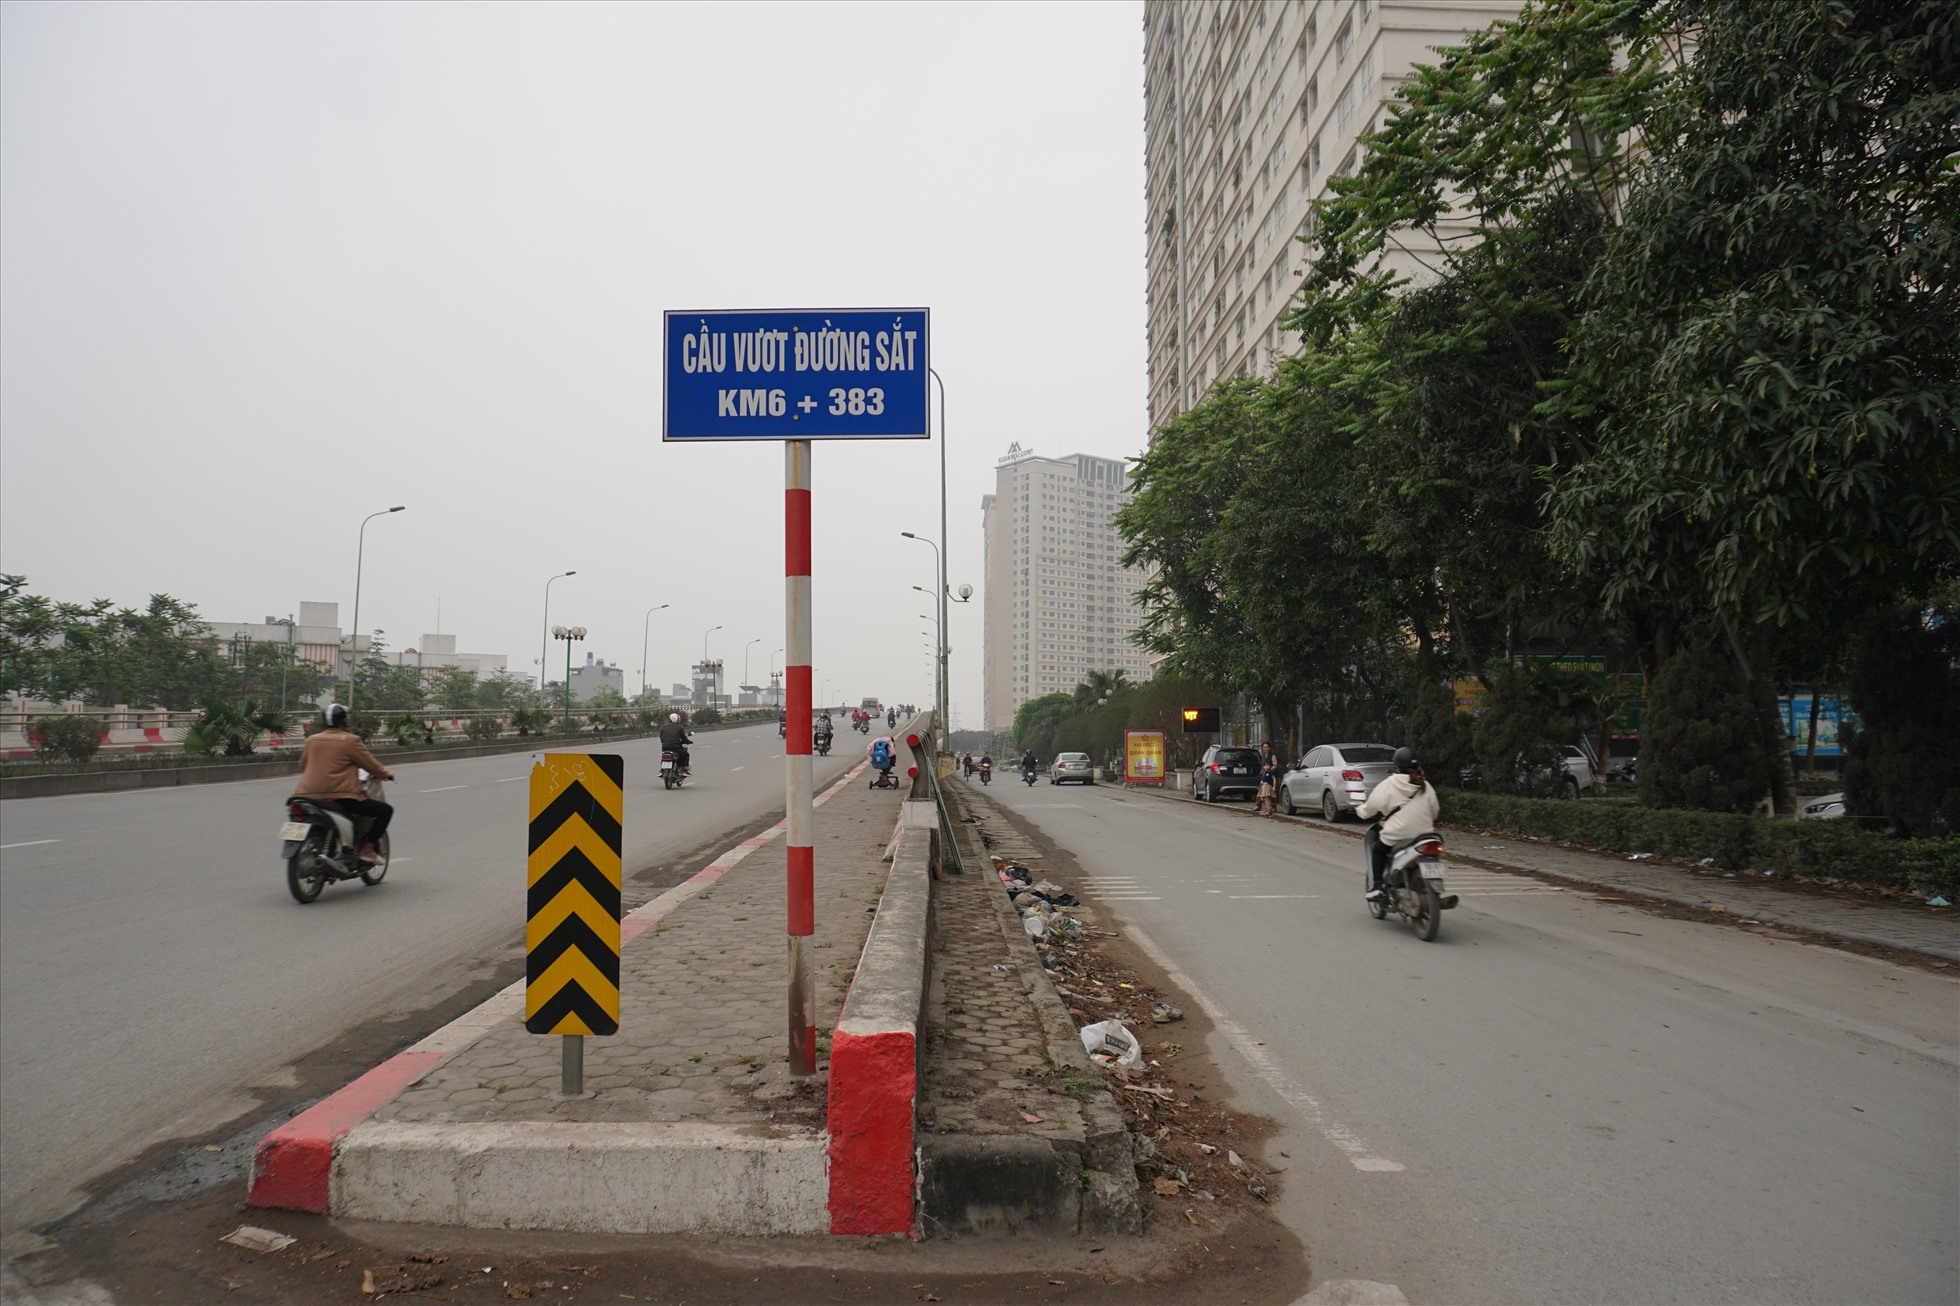 Tại khu vực cầu vượt đường sắt khu vực Dương Nội ( Hà Đông, Hà Nội) cũng xuất hiện tình trạng rác thải được vứt bừa bãi gây bức xúc cho người dân.